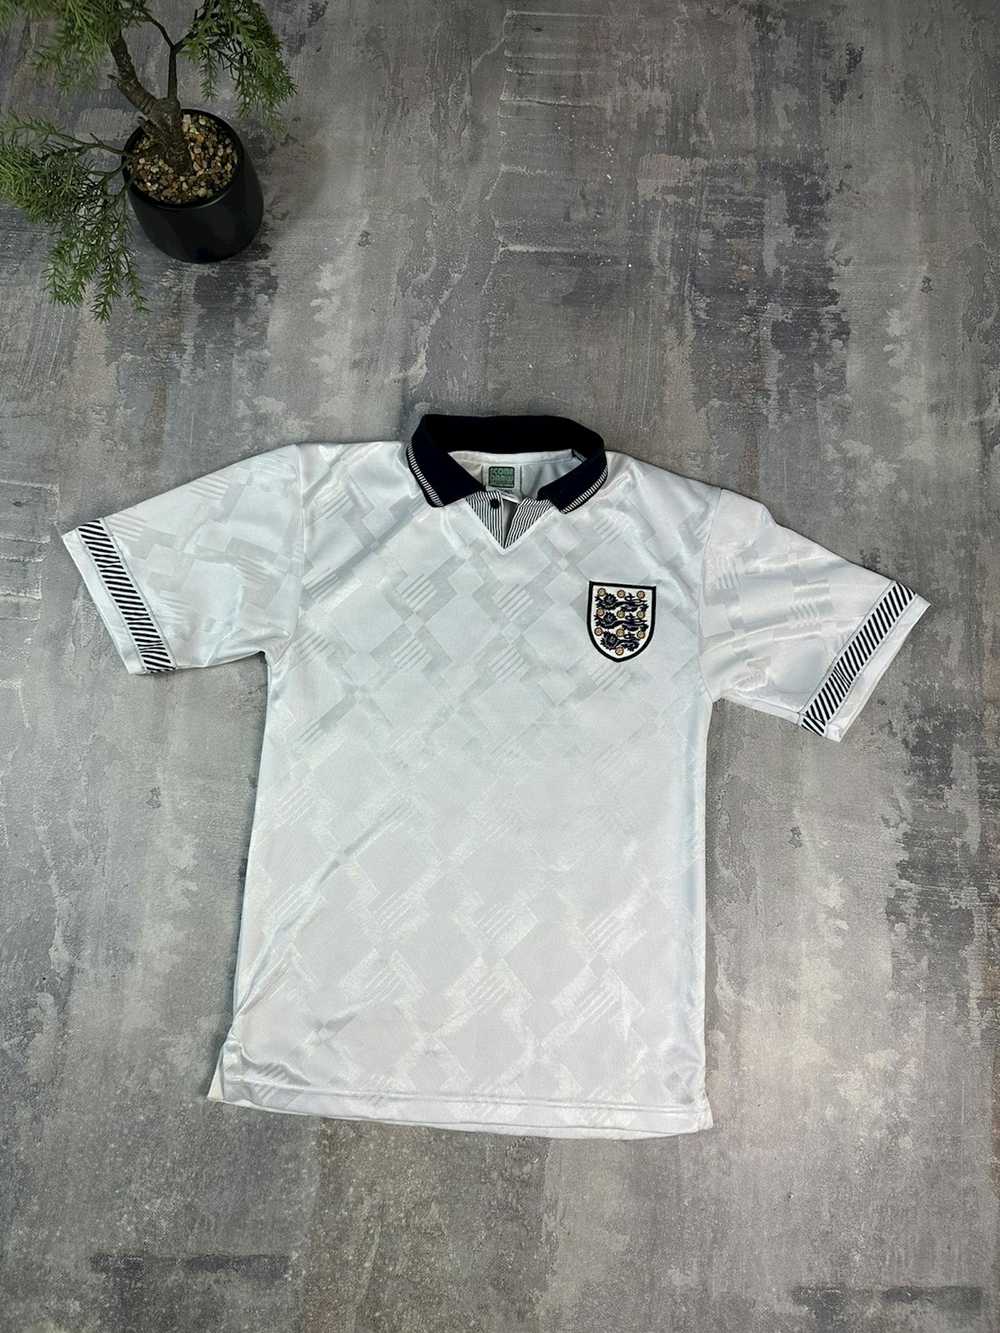 Soccer Jersey × Sportswear × Vintage Vintage Engl… - image 1